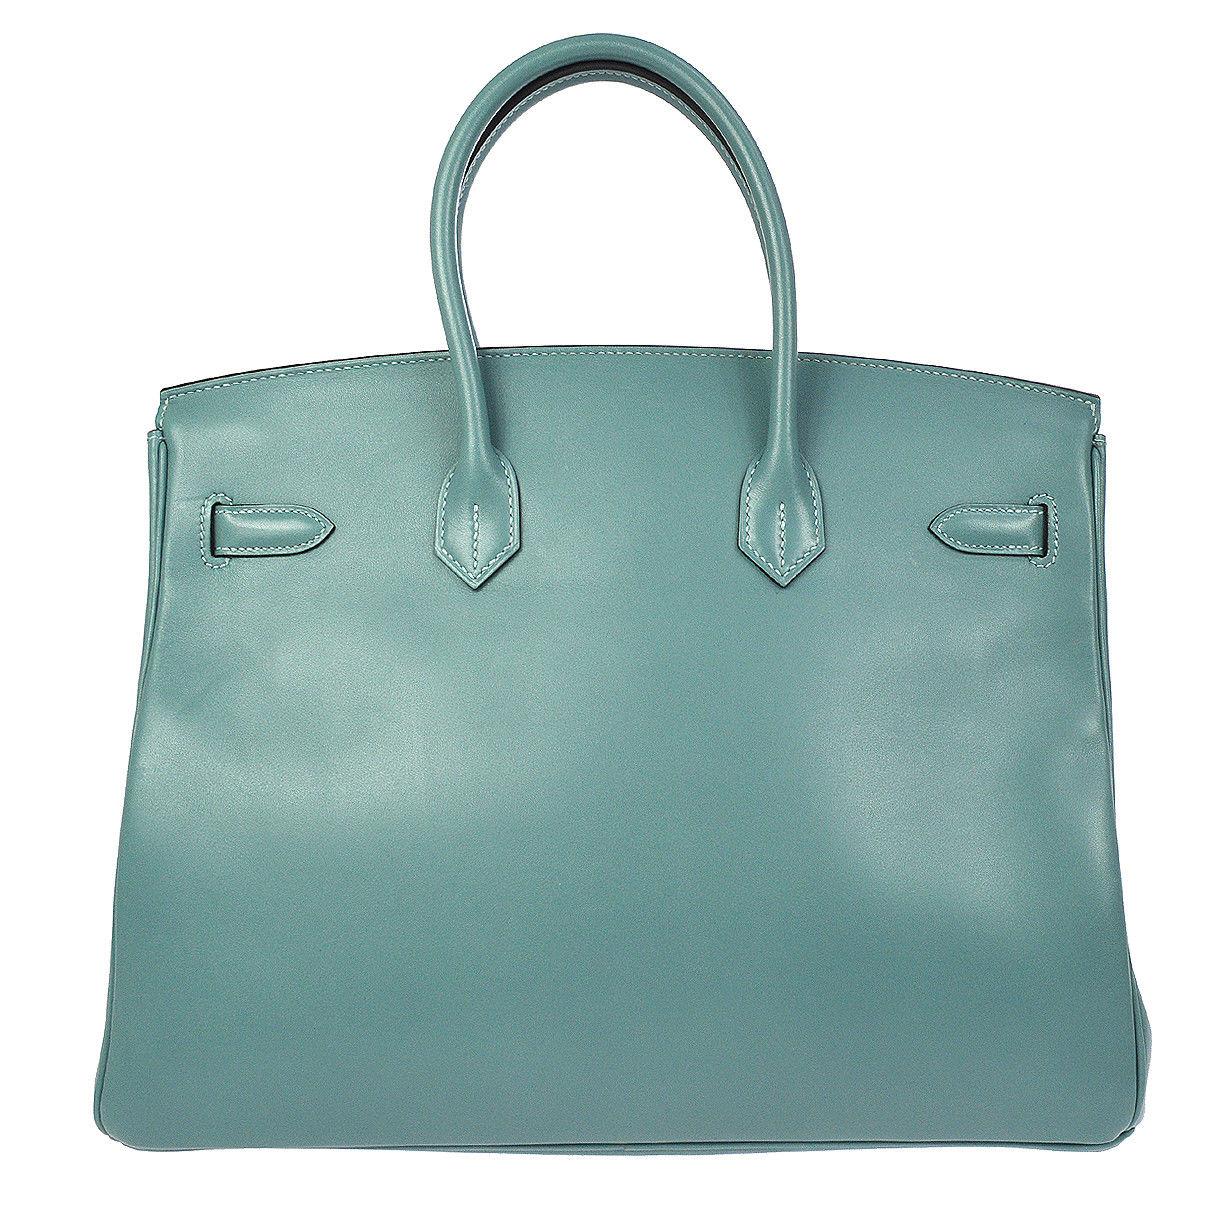 Hermes Birkin 35 Tiffany Blue Leather Top Handle Satchel Travel Shoulder Bag Damen